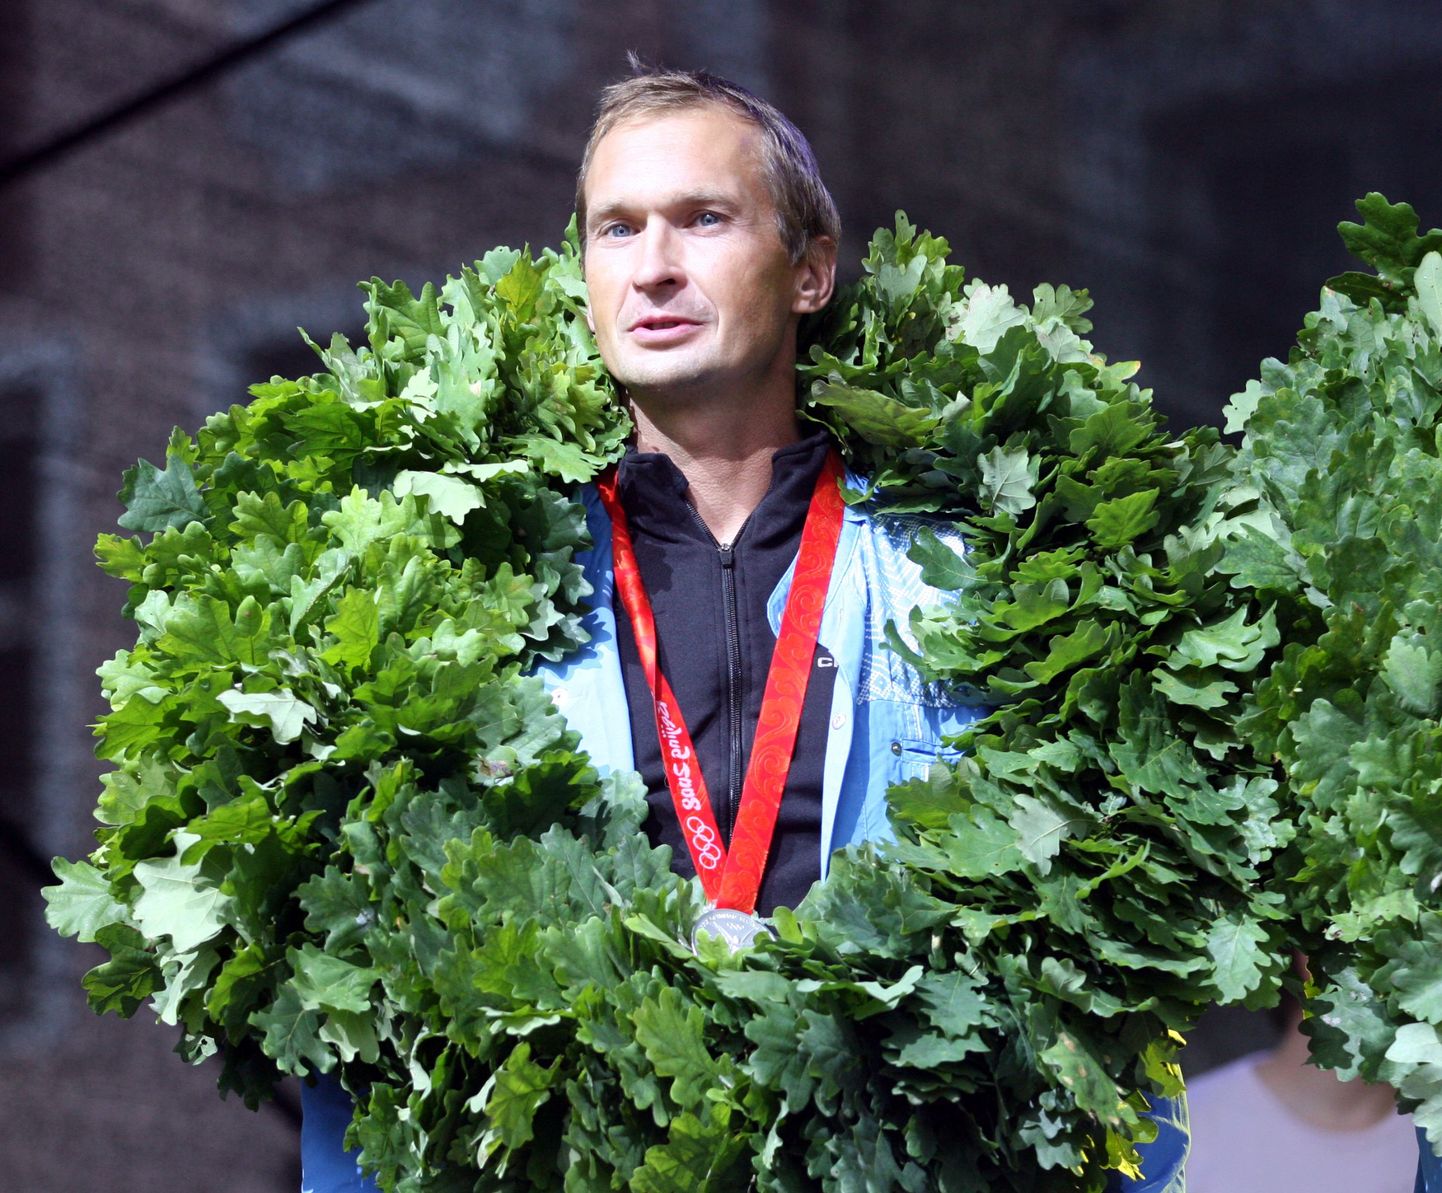 Pildil on olümpiamängudel hõbemedali võitnud Jüri Jaansoni  vastuvõtt Tallinna Raekoja platsil.